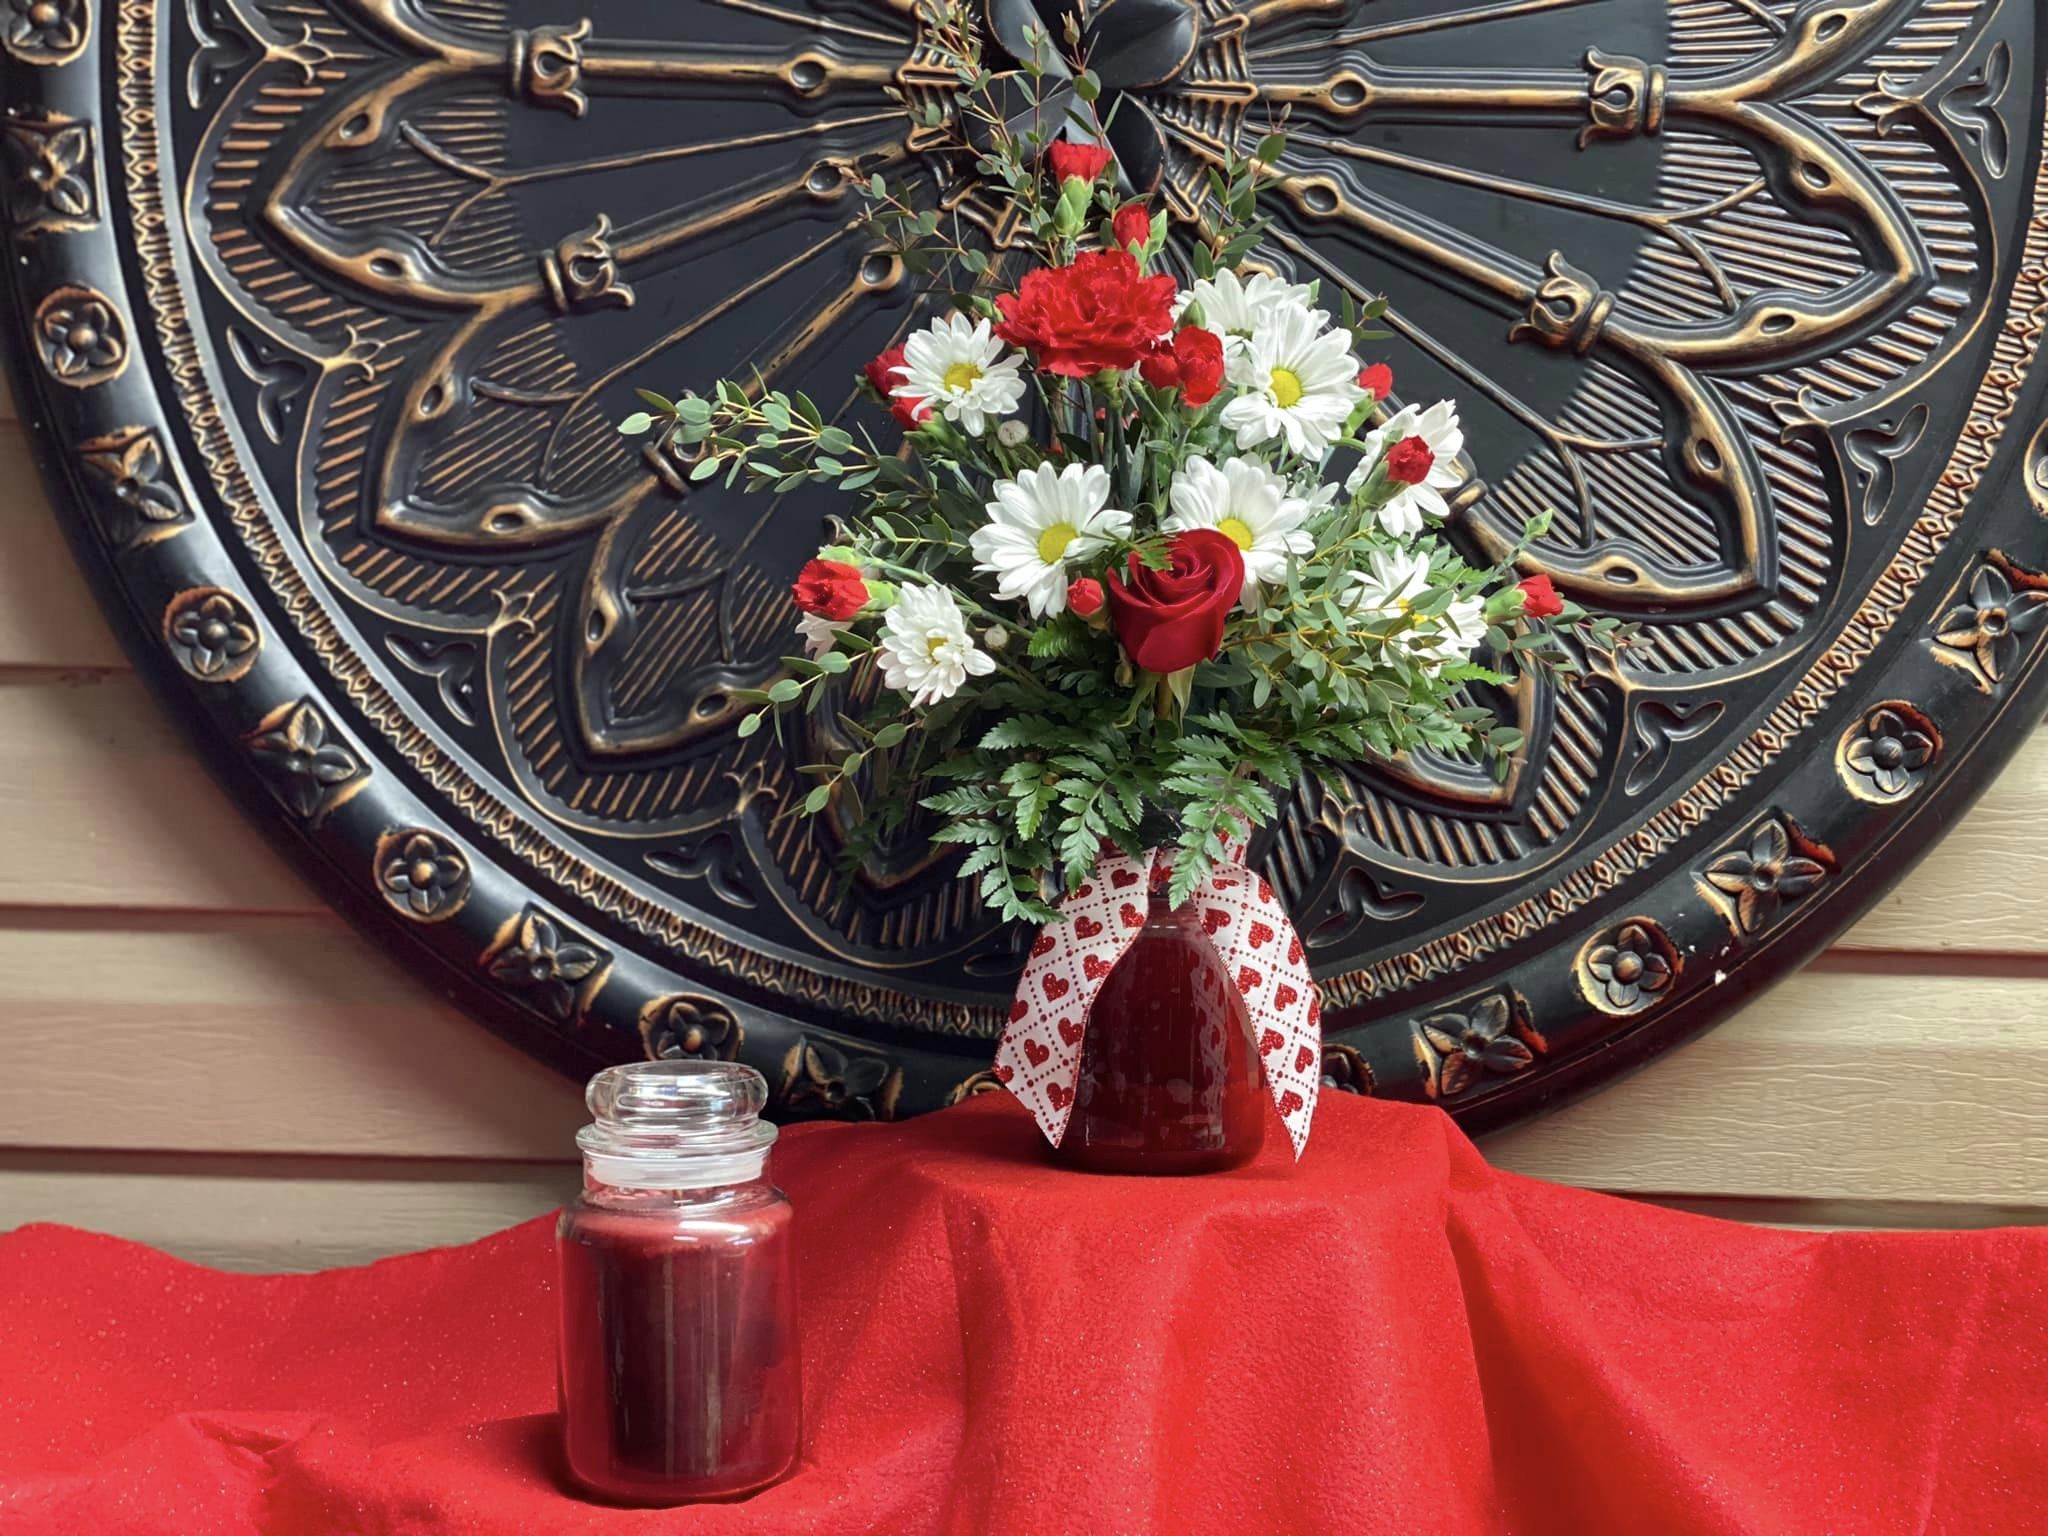 Rose of Sharon Floral Shop 480 Franklin St, Clymer Pennsylvania 15728